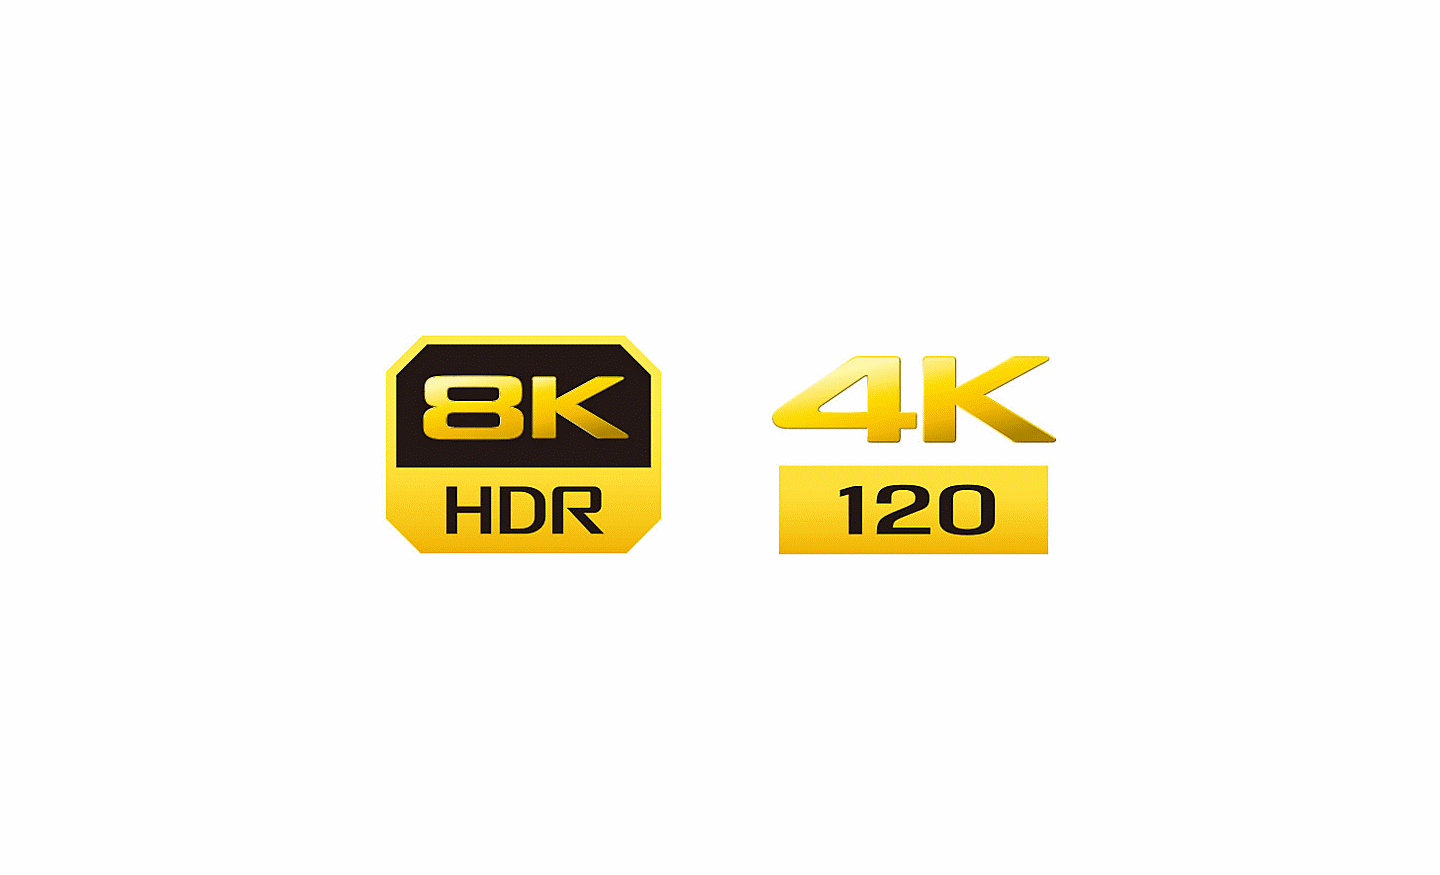 לוגו 8K HDR, 4K 120